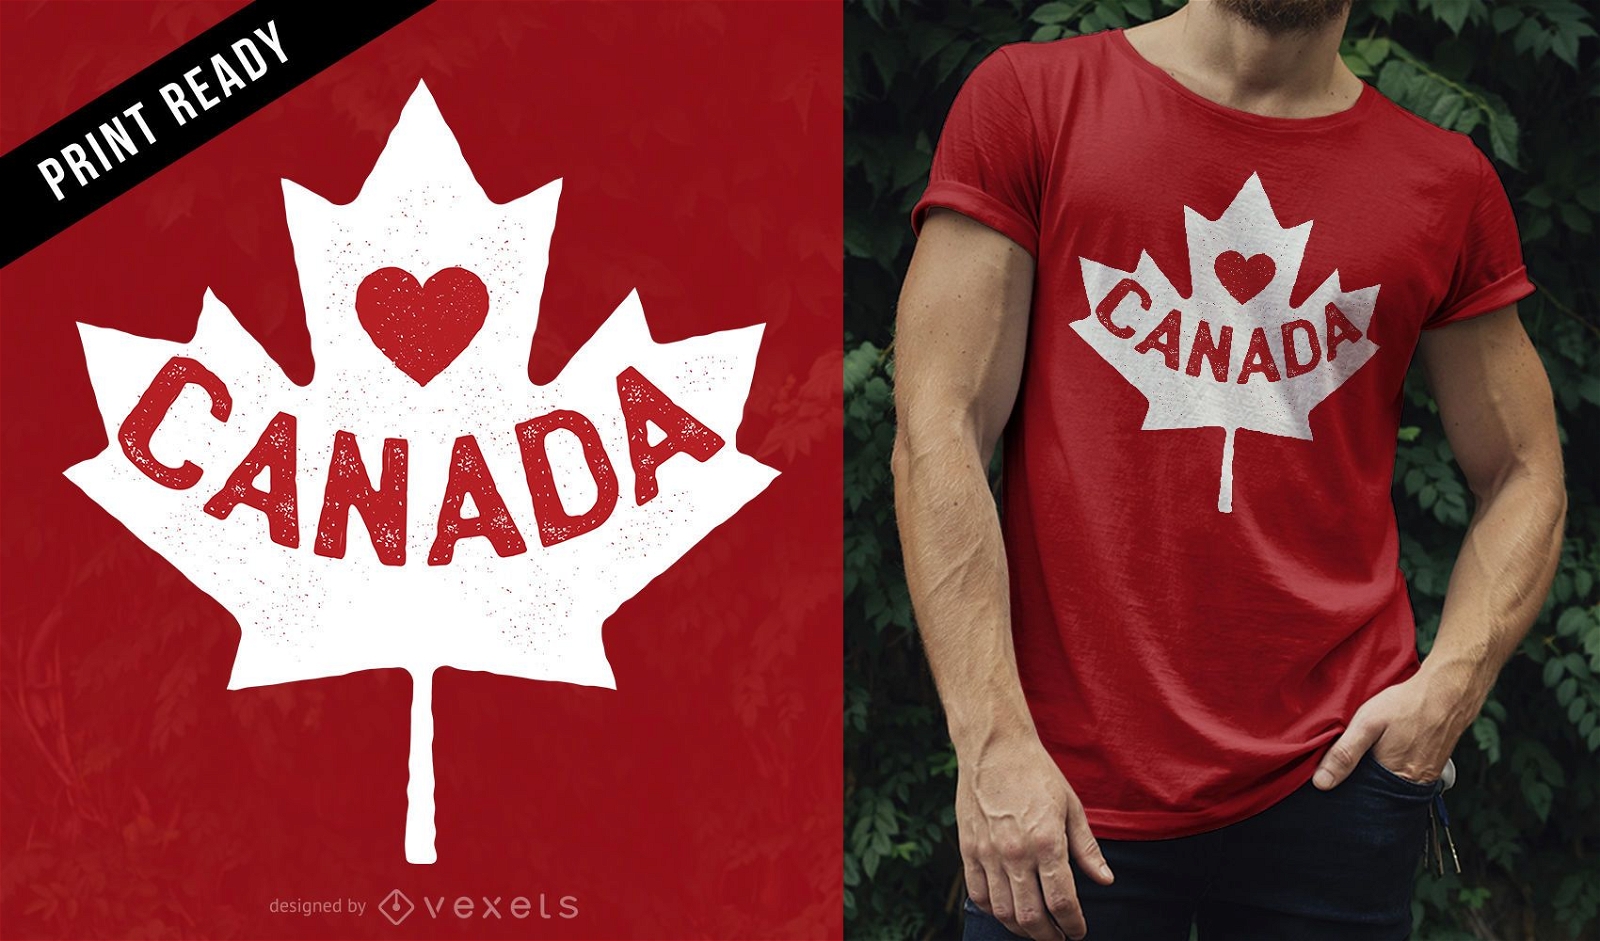 Adoro o design de camisetas do Canad?